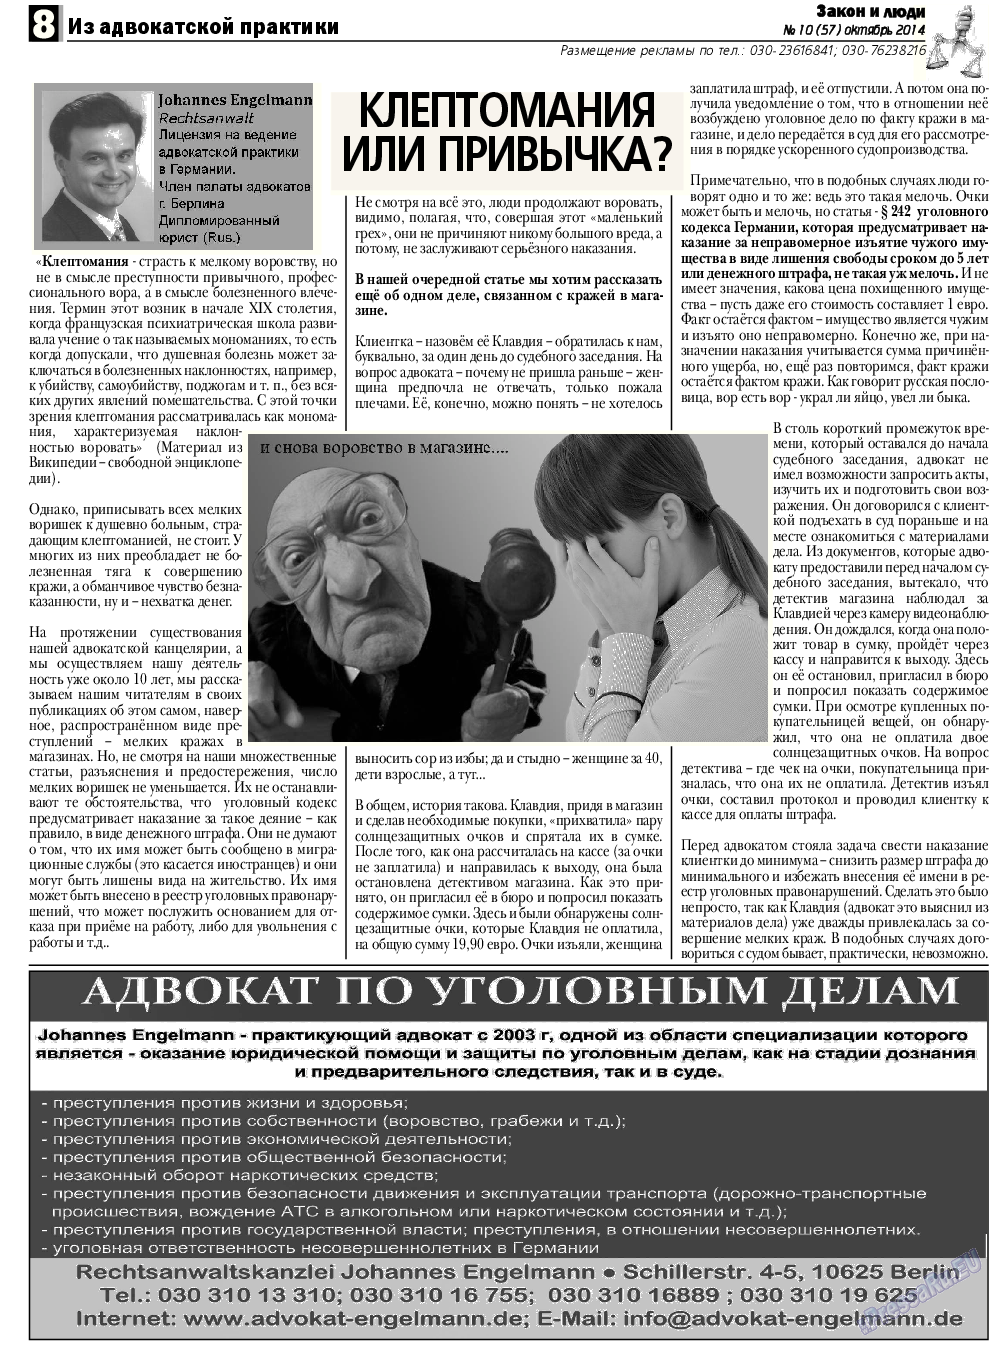 Закон и люди, газета. 2014 №10 стр.8